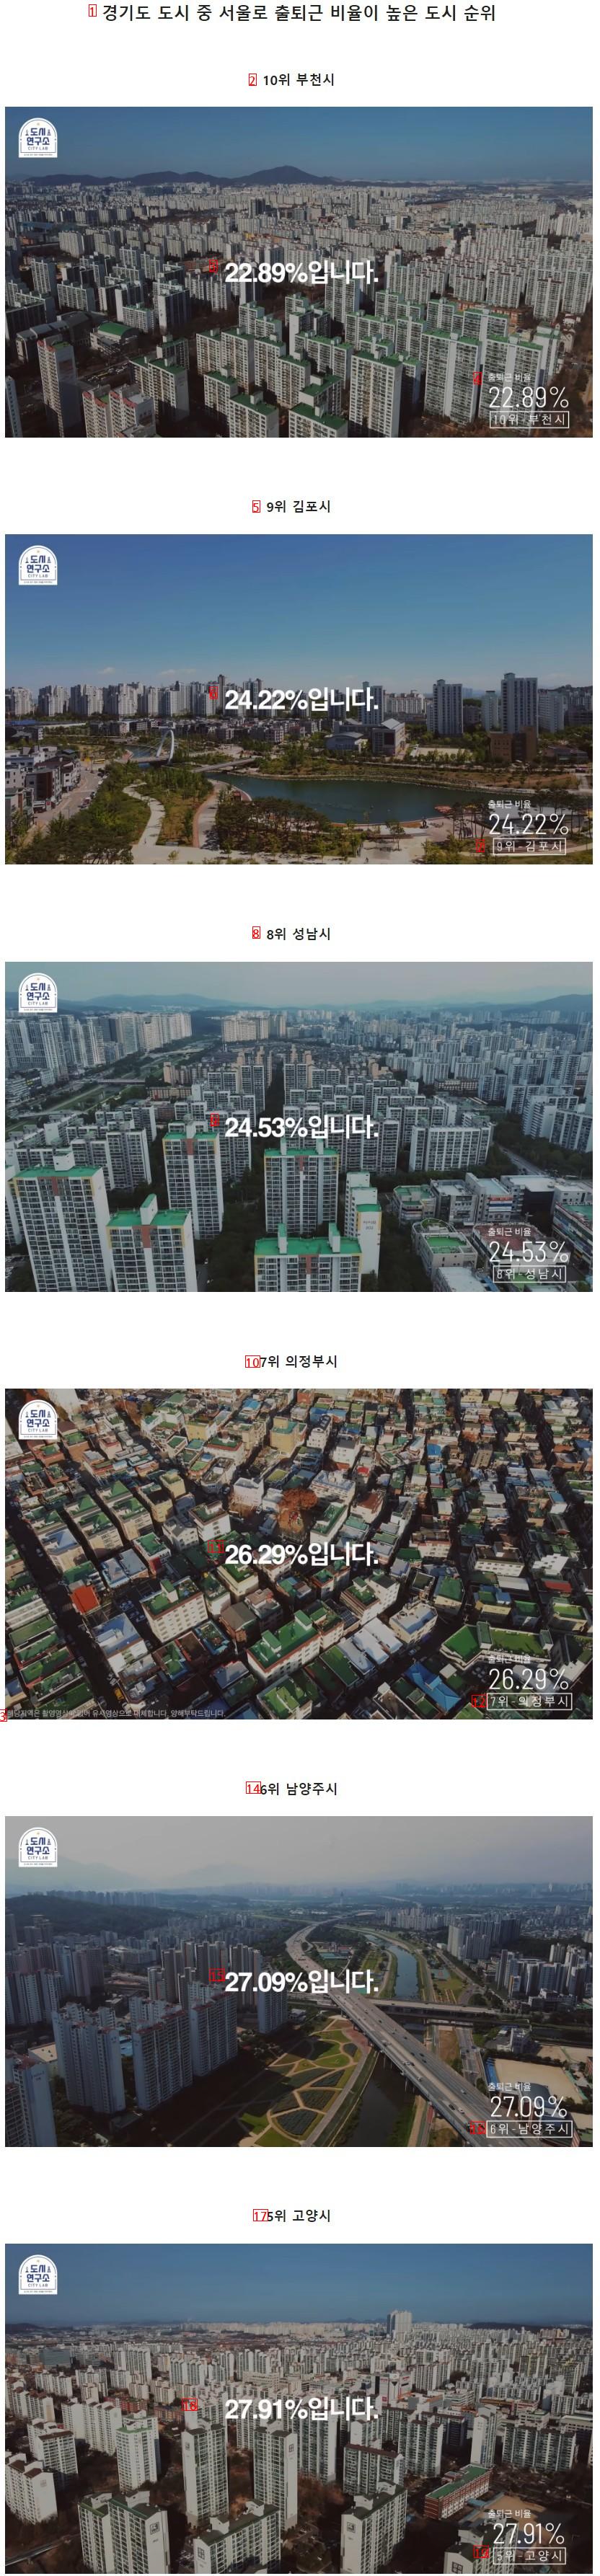 경기도 도시 중 서울로 출퇴근 비율이 높은 도시 순위